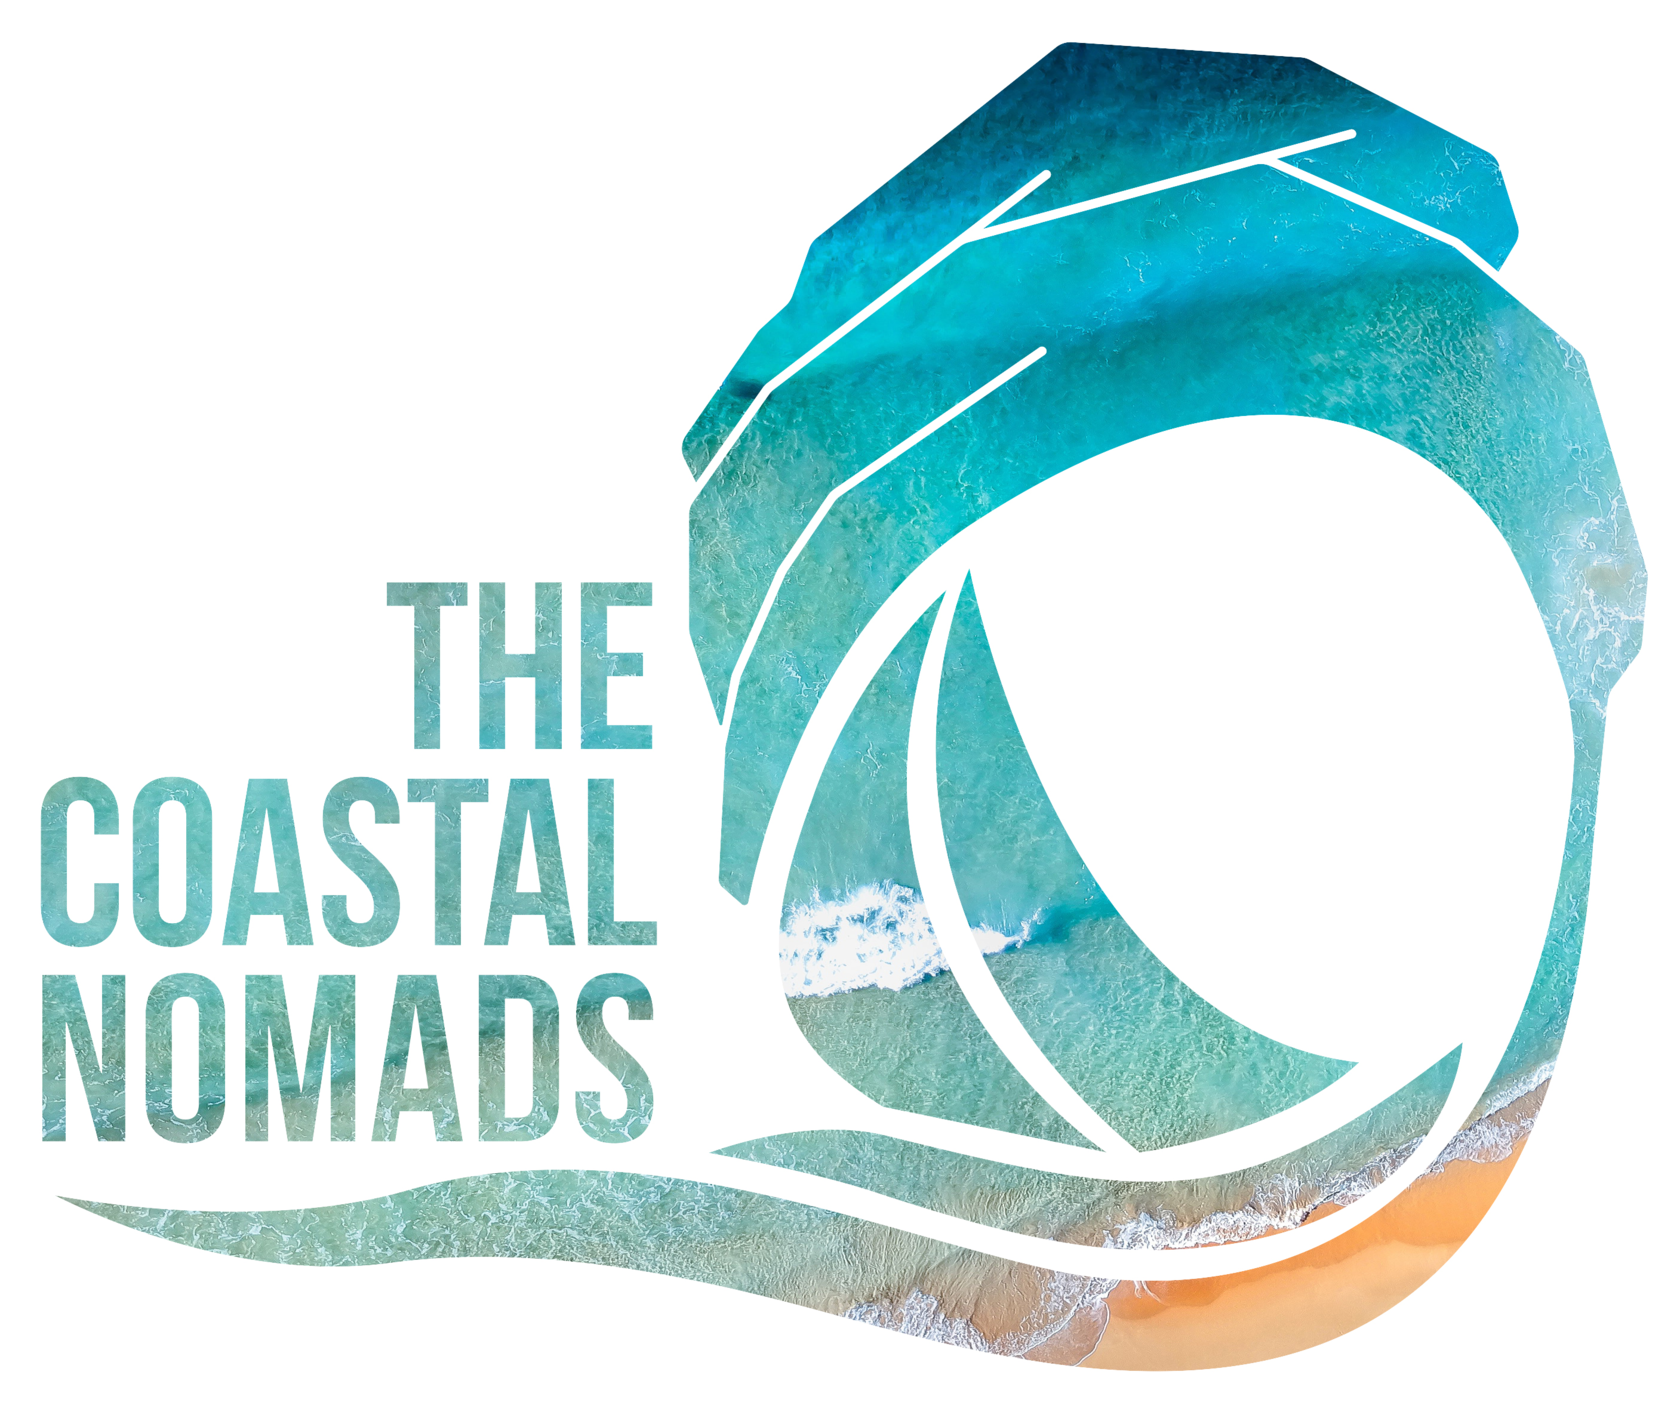 The Coastal Nomads